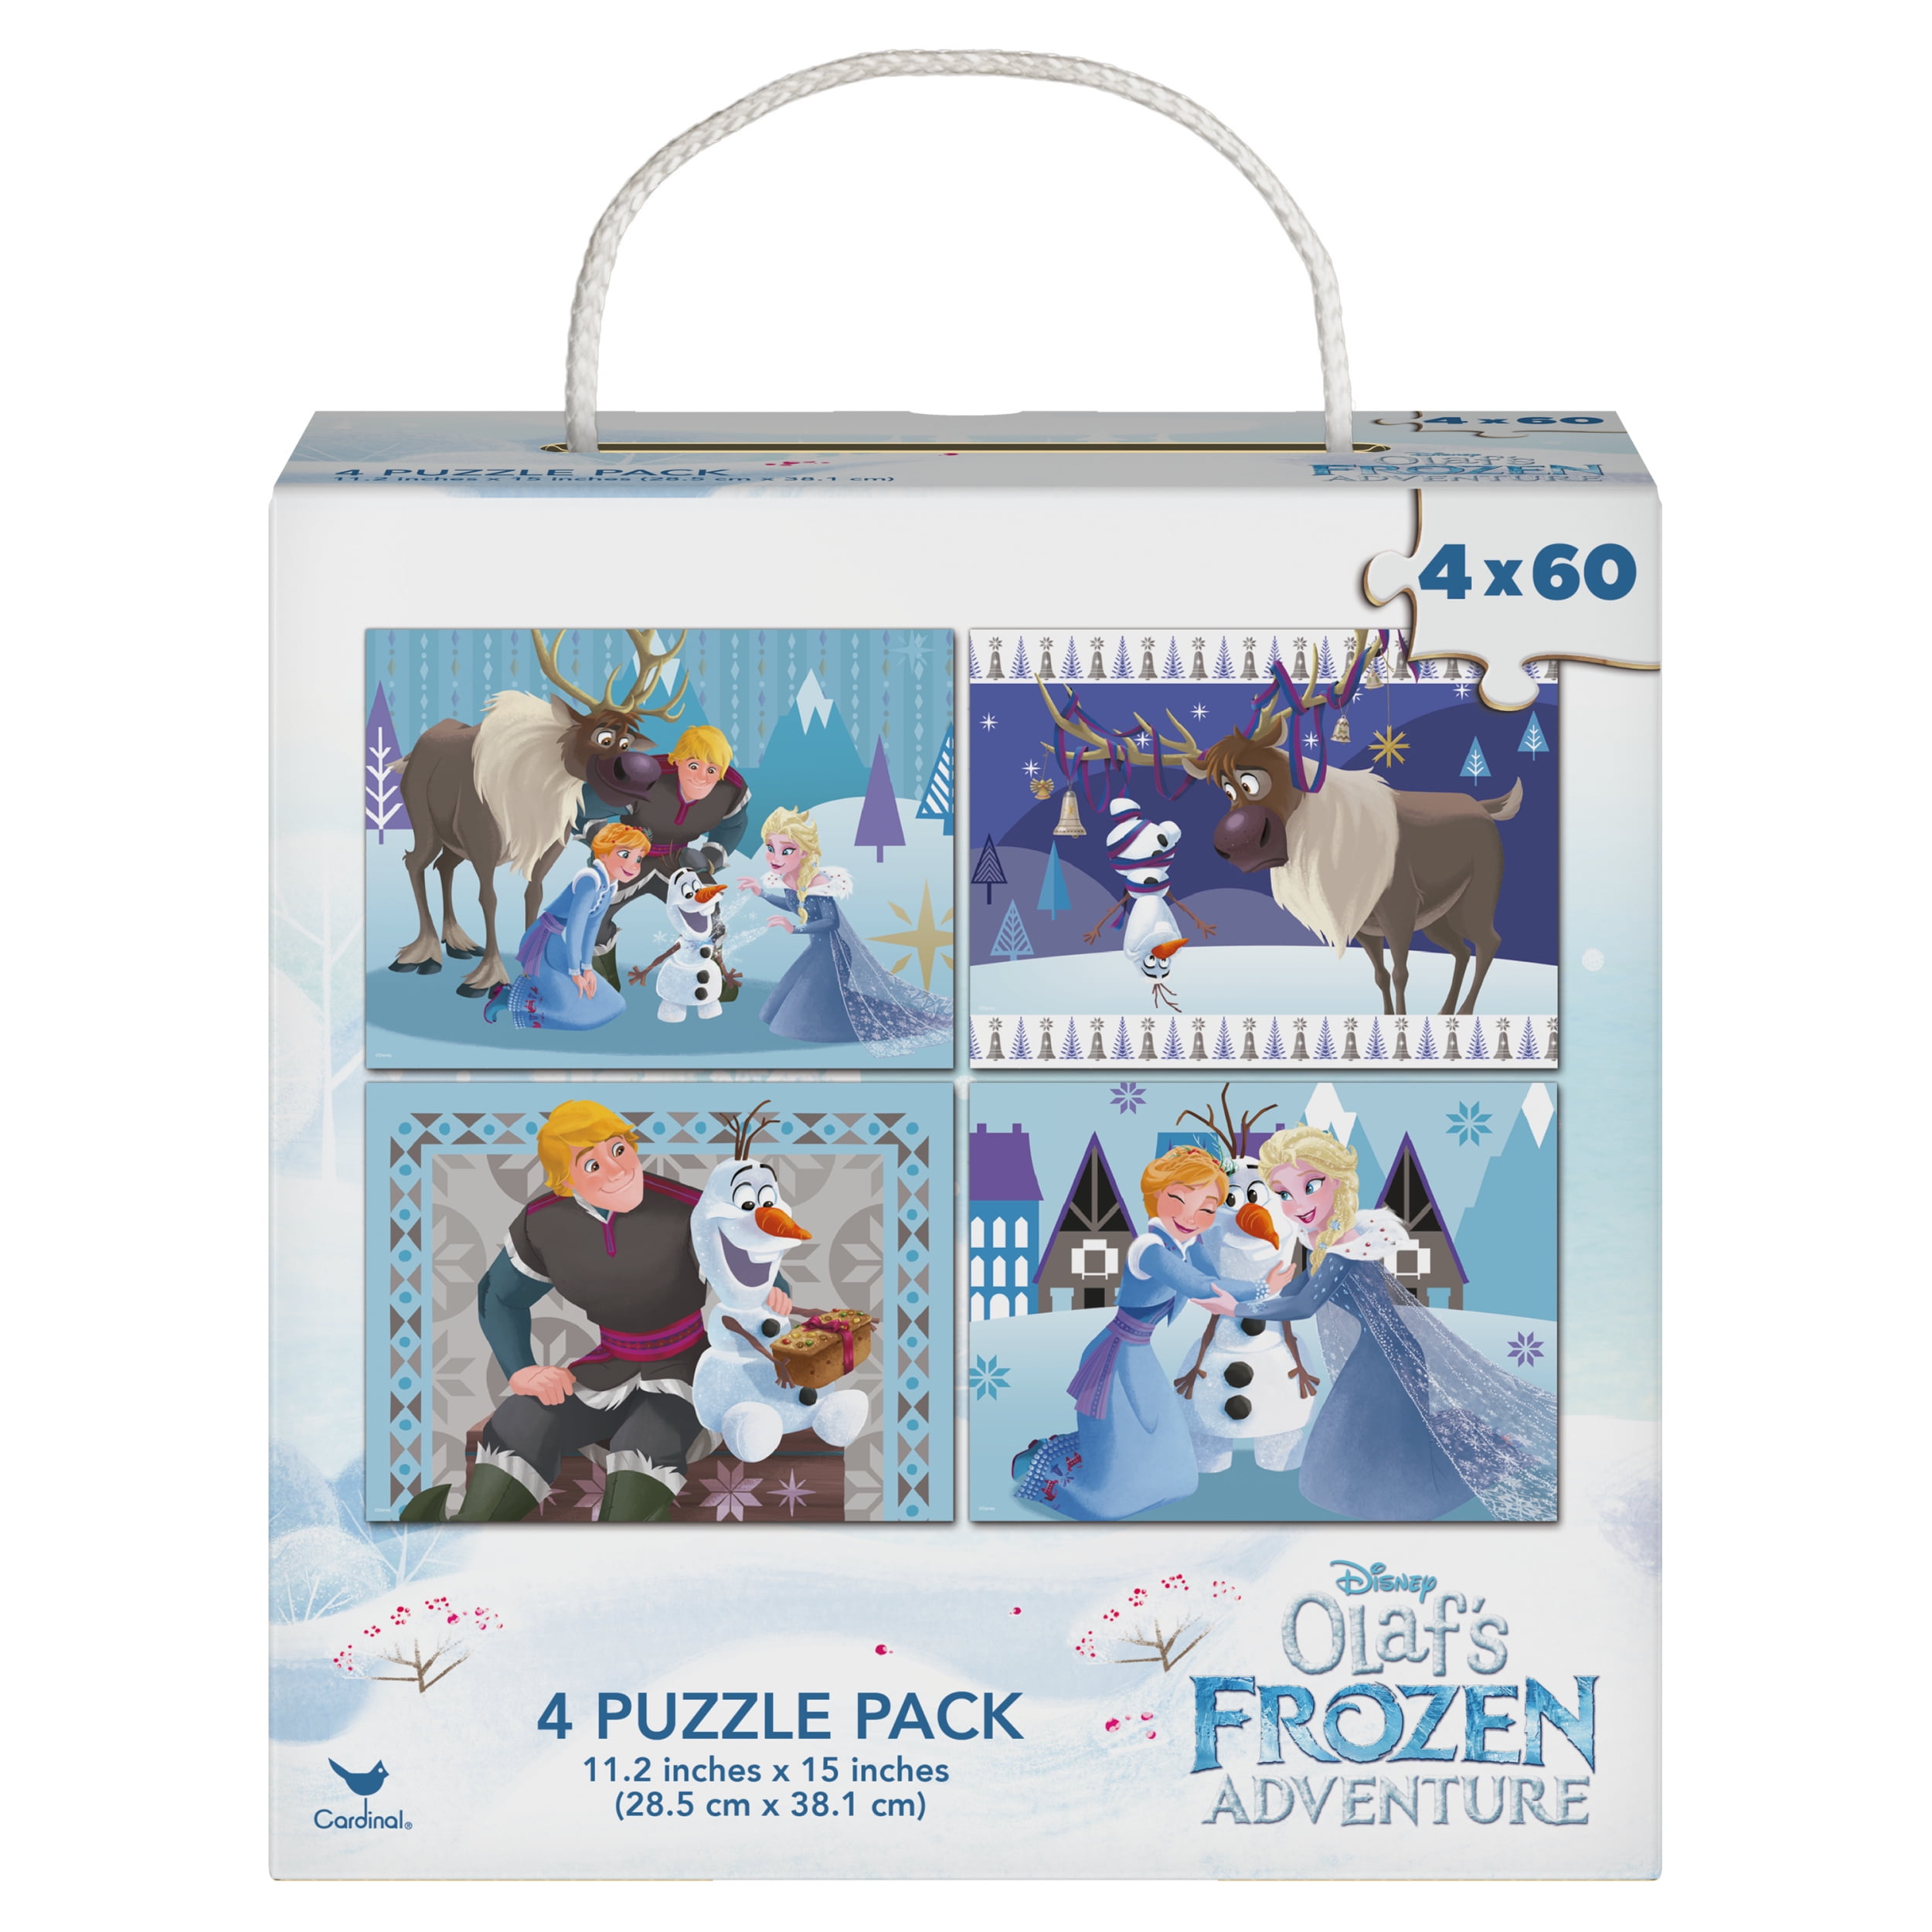 12 pieces each Disney Frozen puzzle 4 pack 